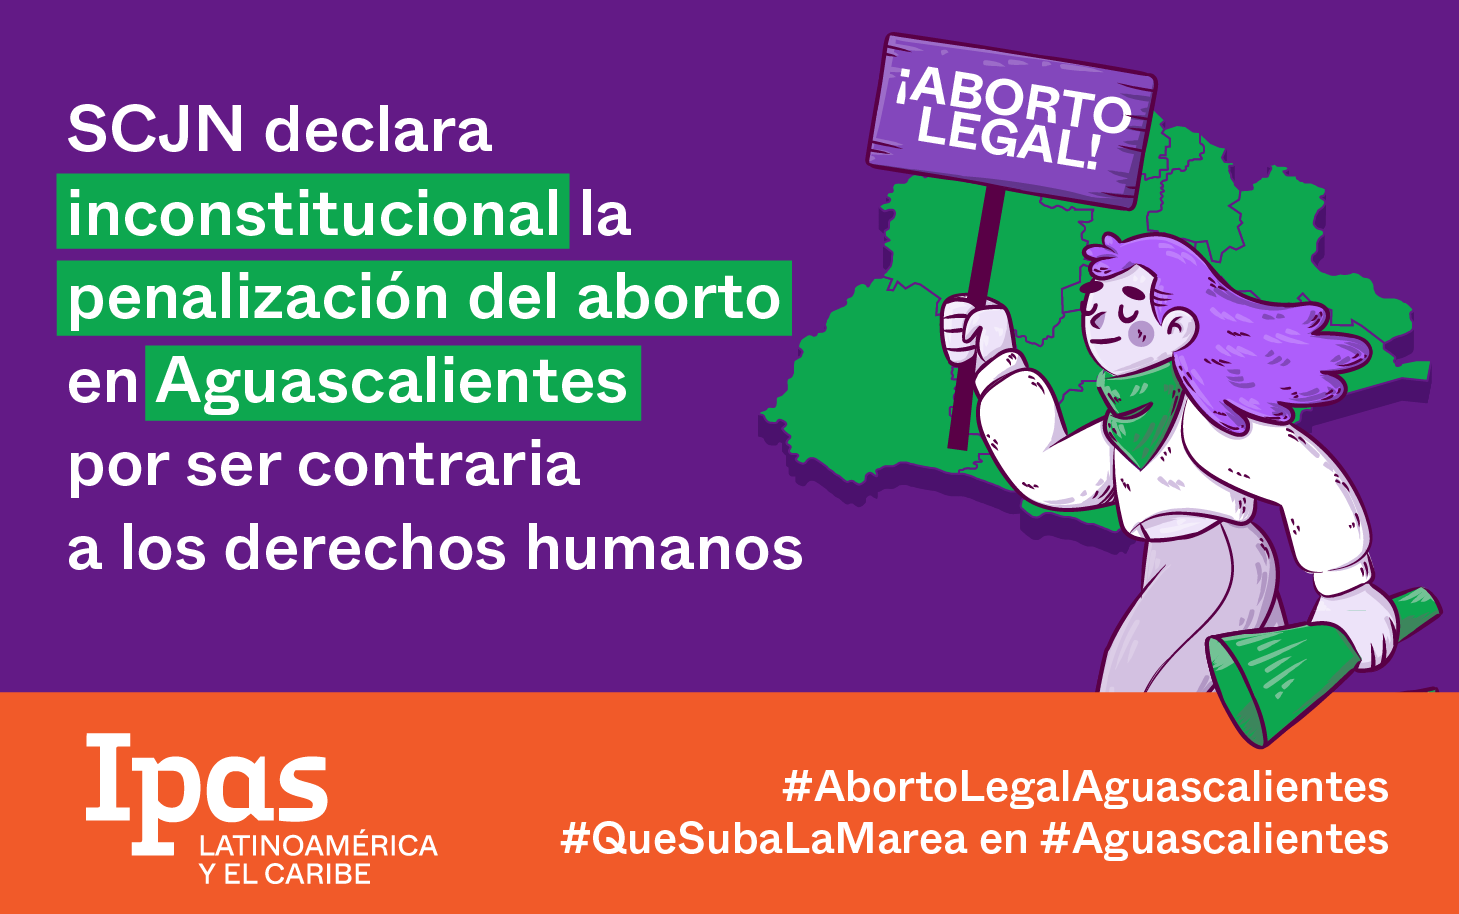 La SCJN declara inconstitucional la penalización del aborto en Aguascalientes por ser contraria a los derechos humanos